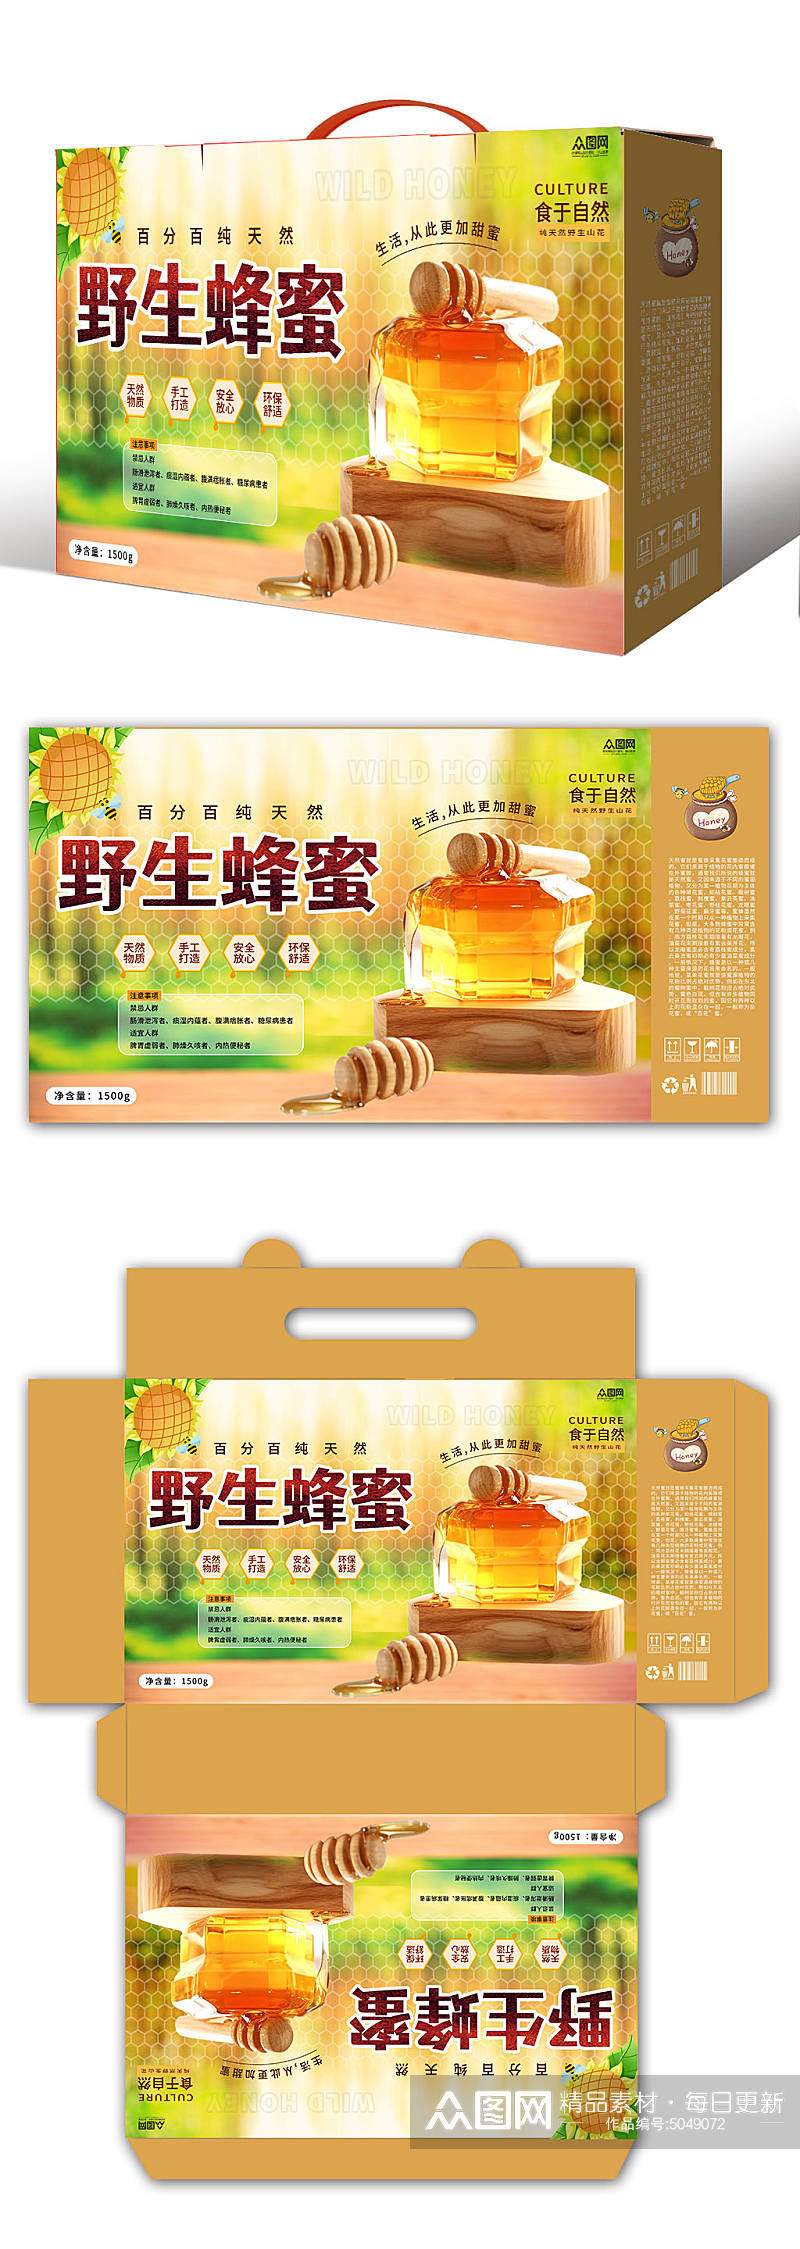 野生天然蜂蜜包装盒设计素材